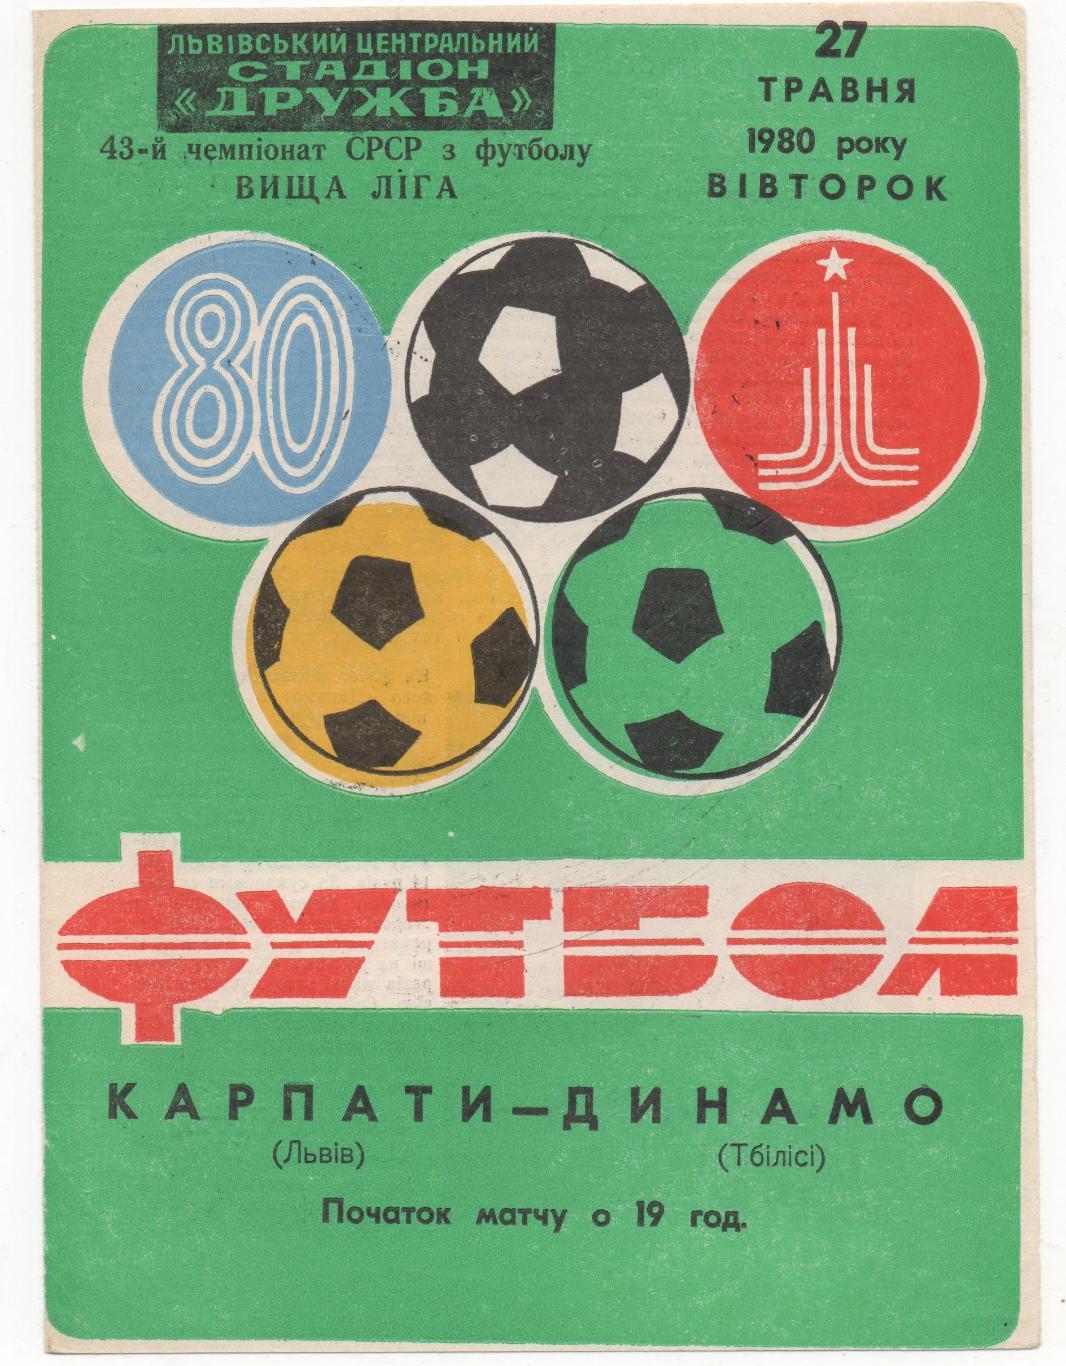 Карпаты (Львов) - Динамо (Тбилиси) - 1980.